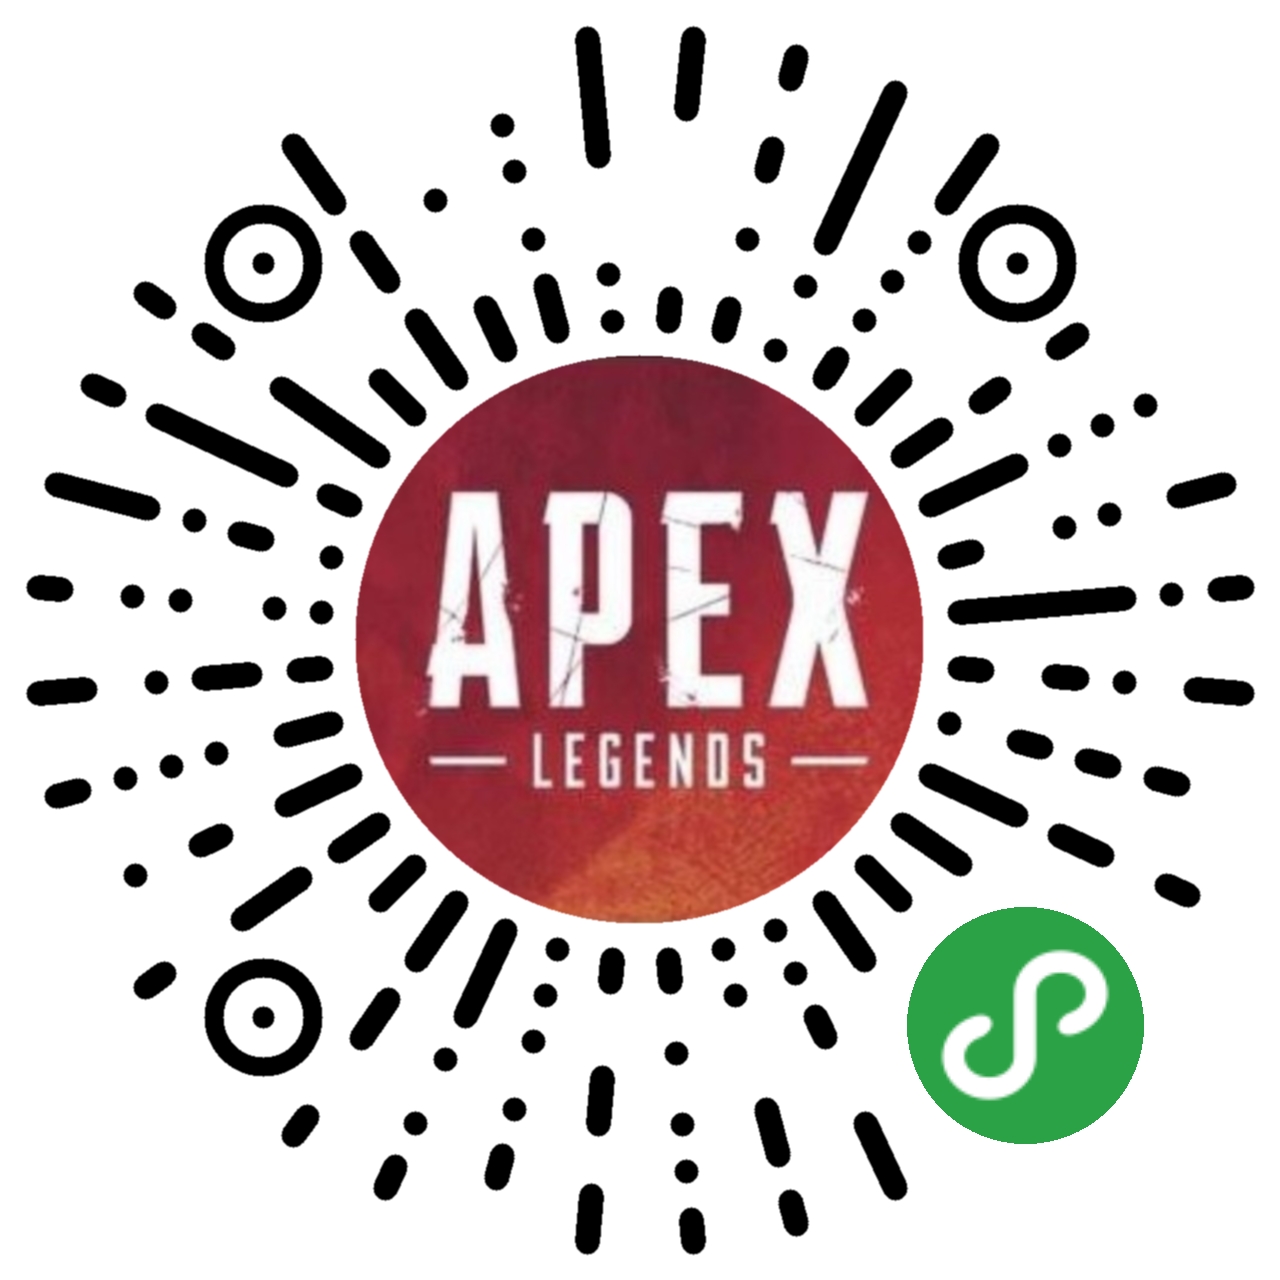 Apex英雄游戏助手_Apex英雄游戏助手小程序_Apex英雄游戏助手微信小程序